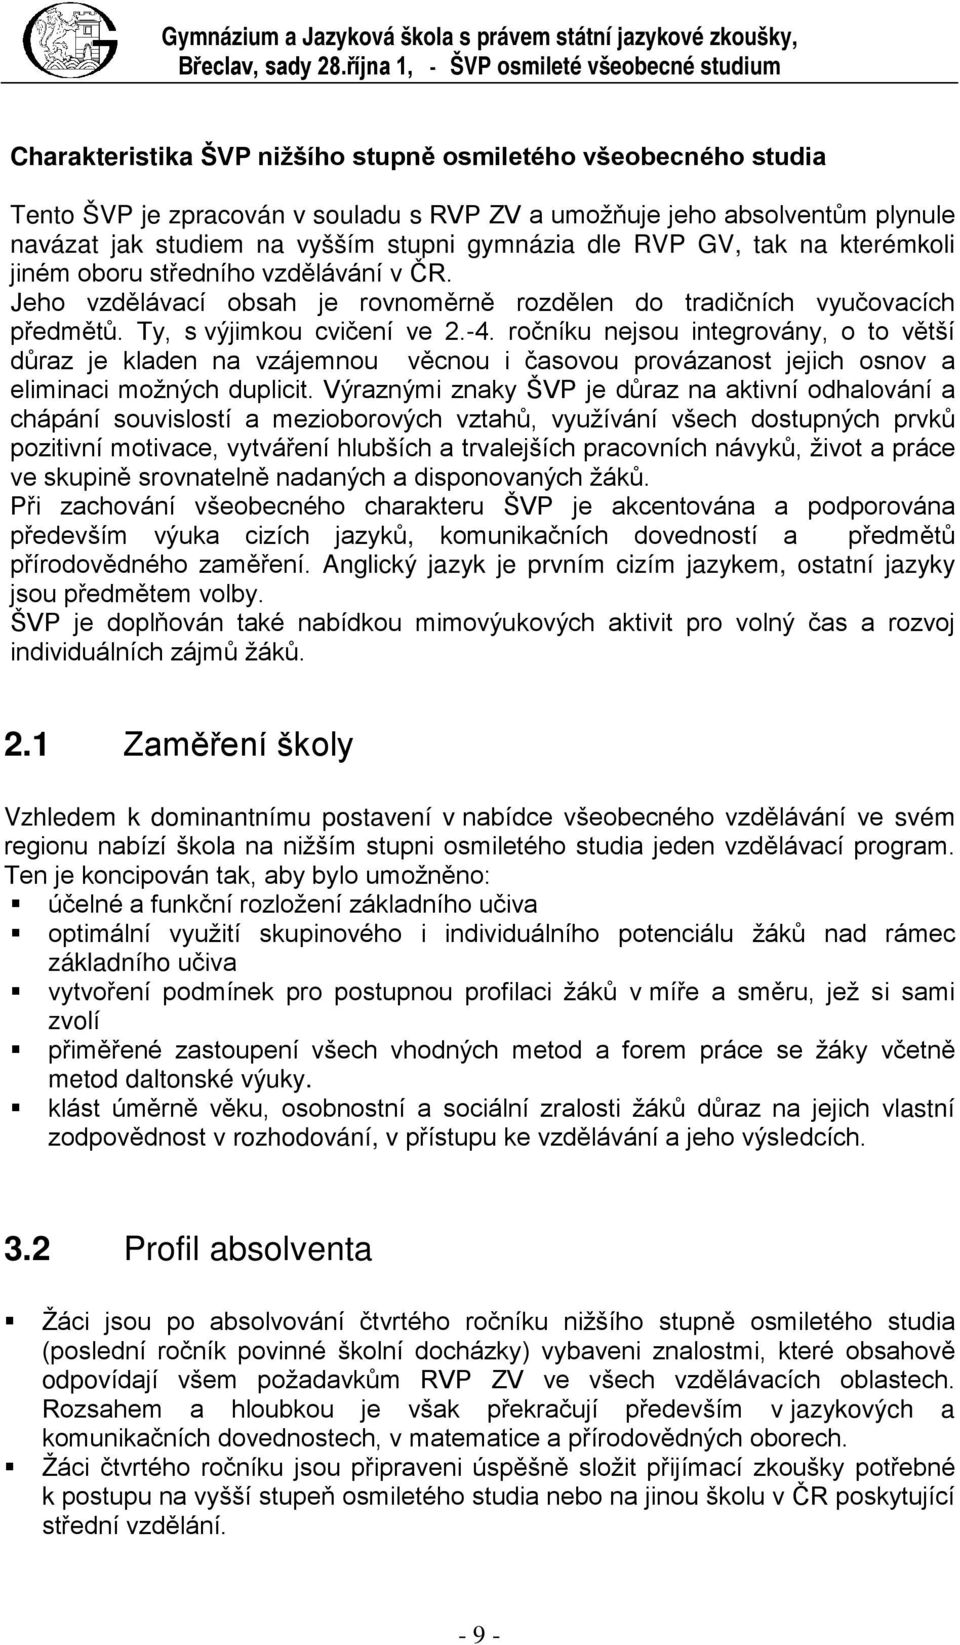 studiem na vyšším stupni gymnázia dle RVP GV, tak na kterémkoli jiném oboru středního vzdělávání v ČR. Jeho vzdělávací obsah je rovnoměrně rozdělen do tradičních vyučovacích předmětů.